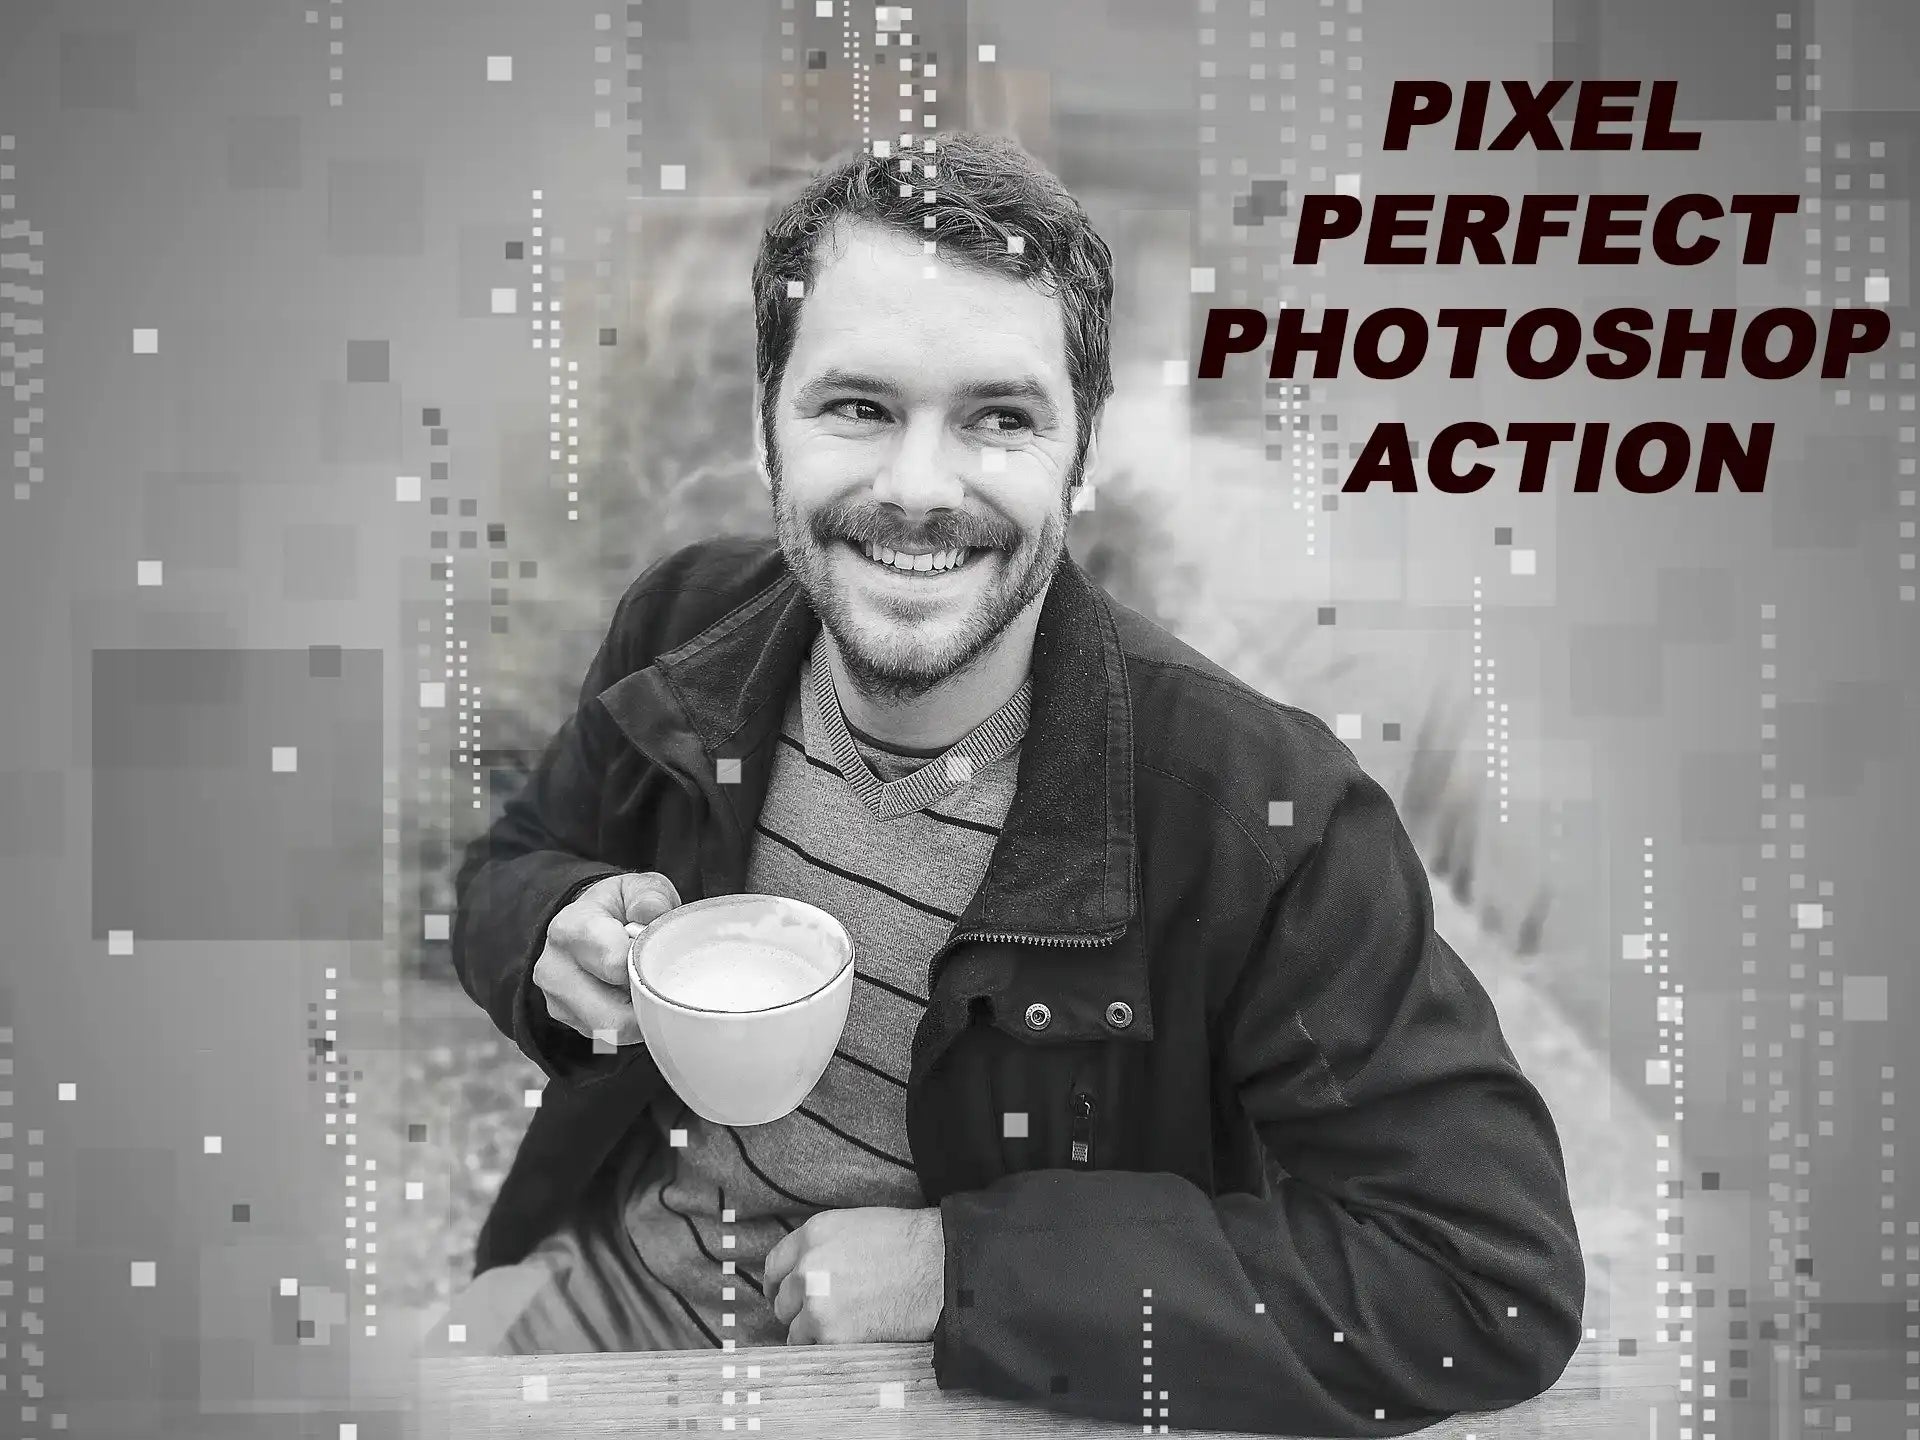 15 Remarkable Photoshop Actions Bundle - Photoboto